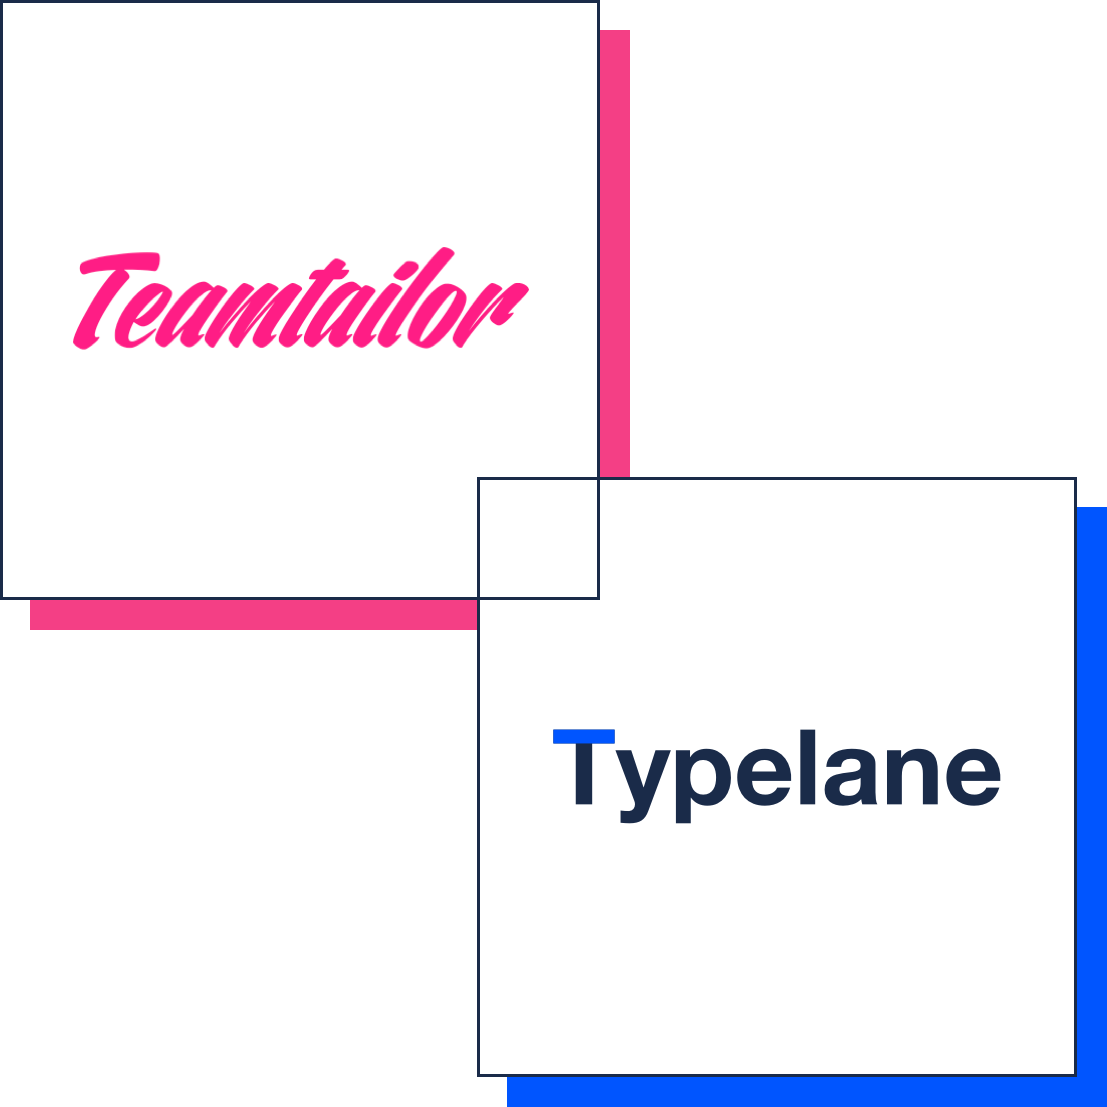 Teamtailor x Typelane